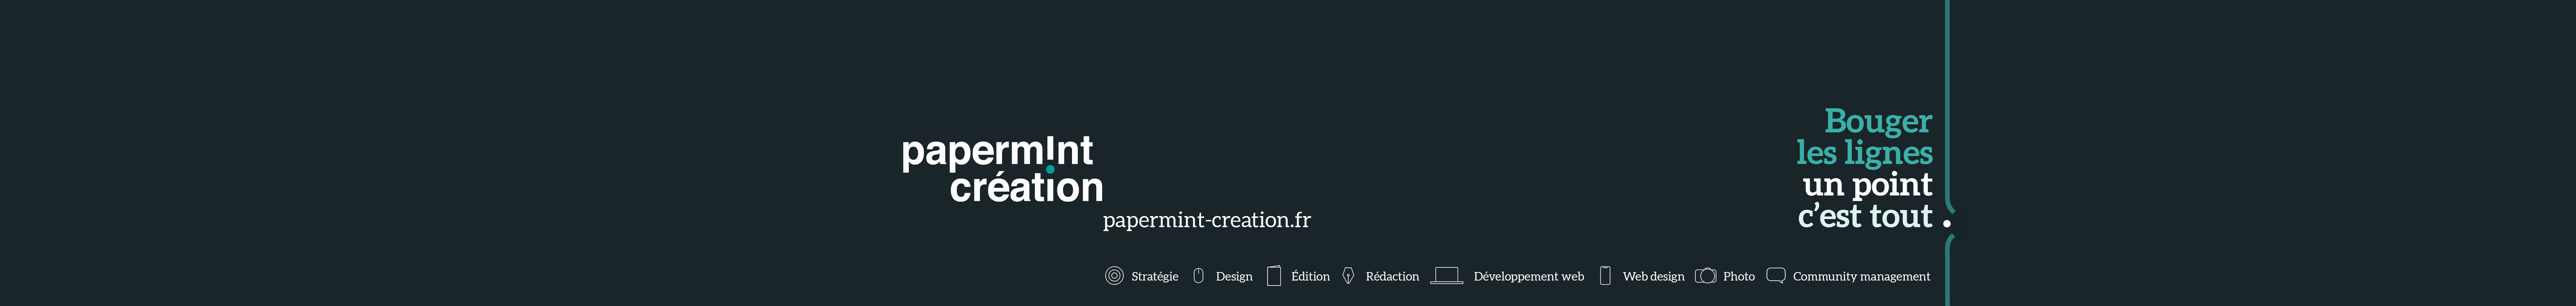 Papermint création's profile banner